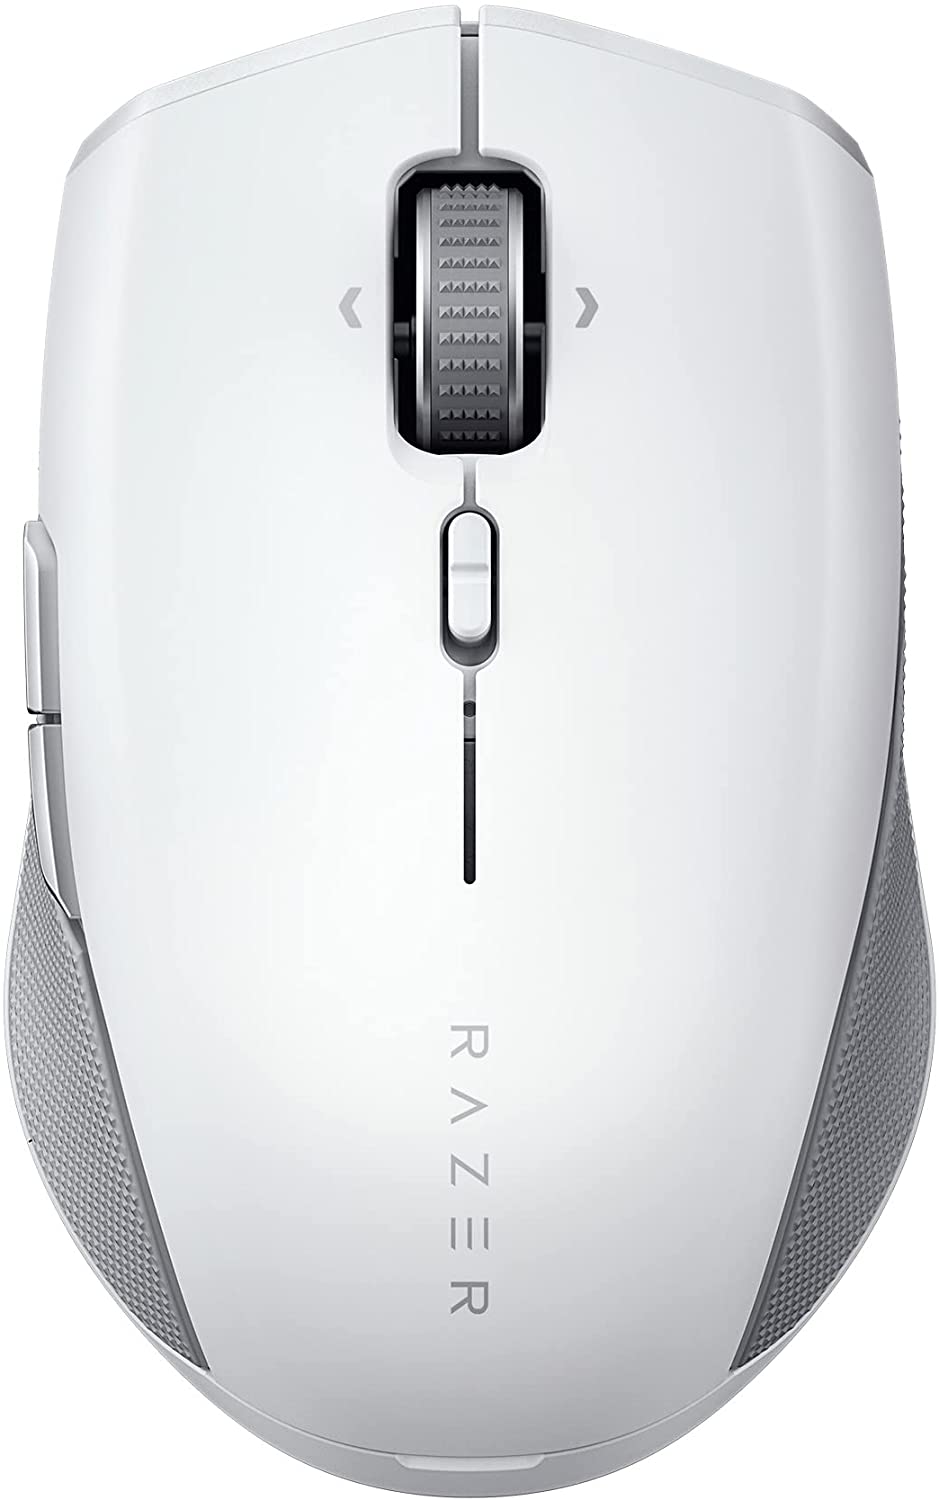 Razer Pro Click Mini Wireless Mouse Compact Design - Mercury